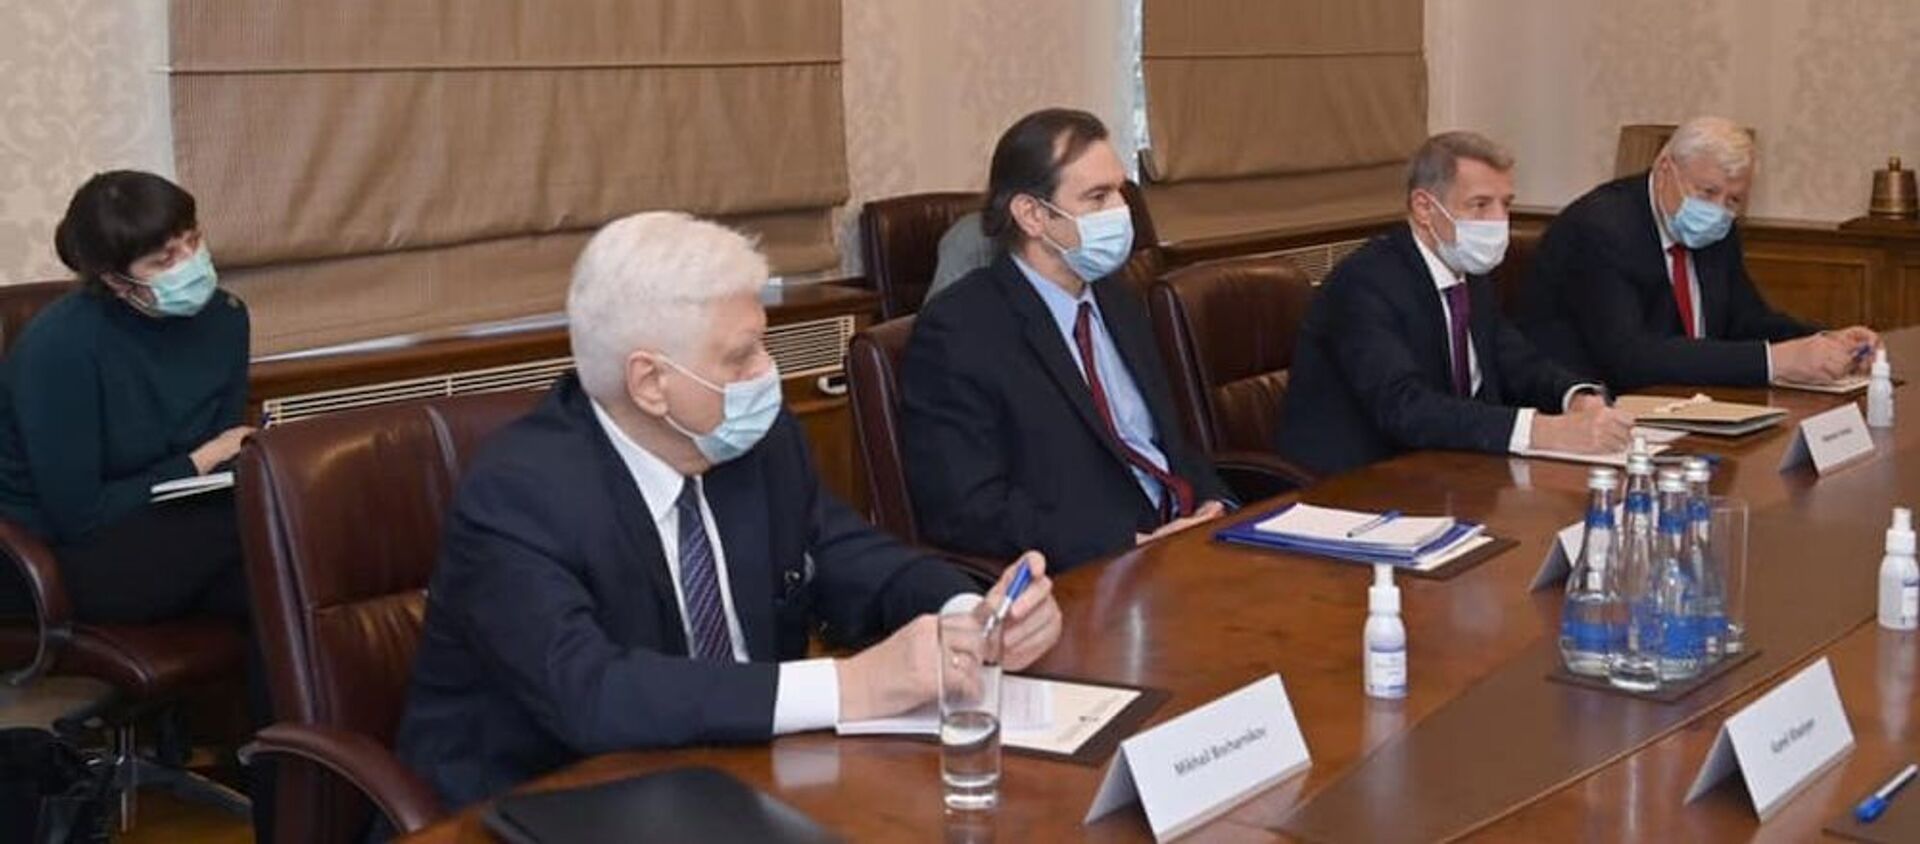 Джейхун Байрамов во время встречи с представителями МГ ОБСЕ и послом России в Азербайджане - Sputnik Азербайджан, 1920, 15.04.2021